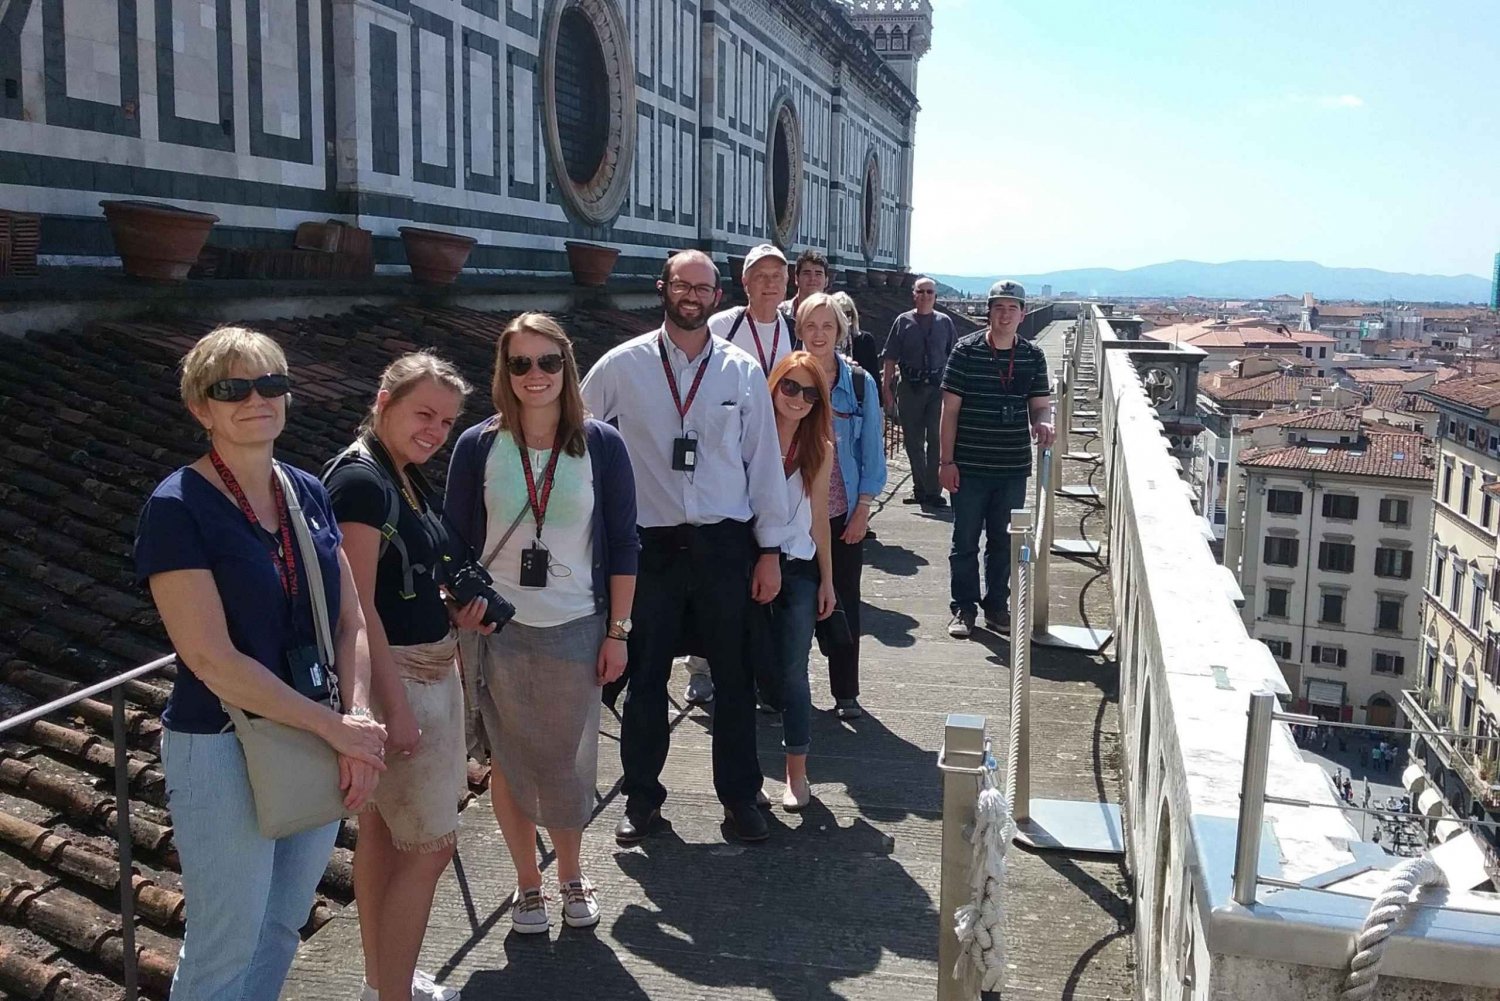 Firenze: VIP-katedral, kuppeltur på taget og privat terrasse